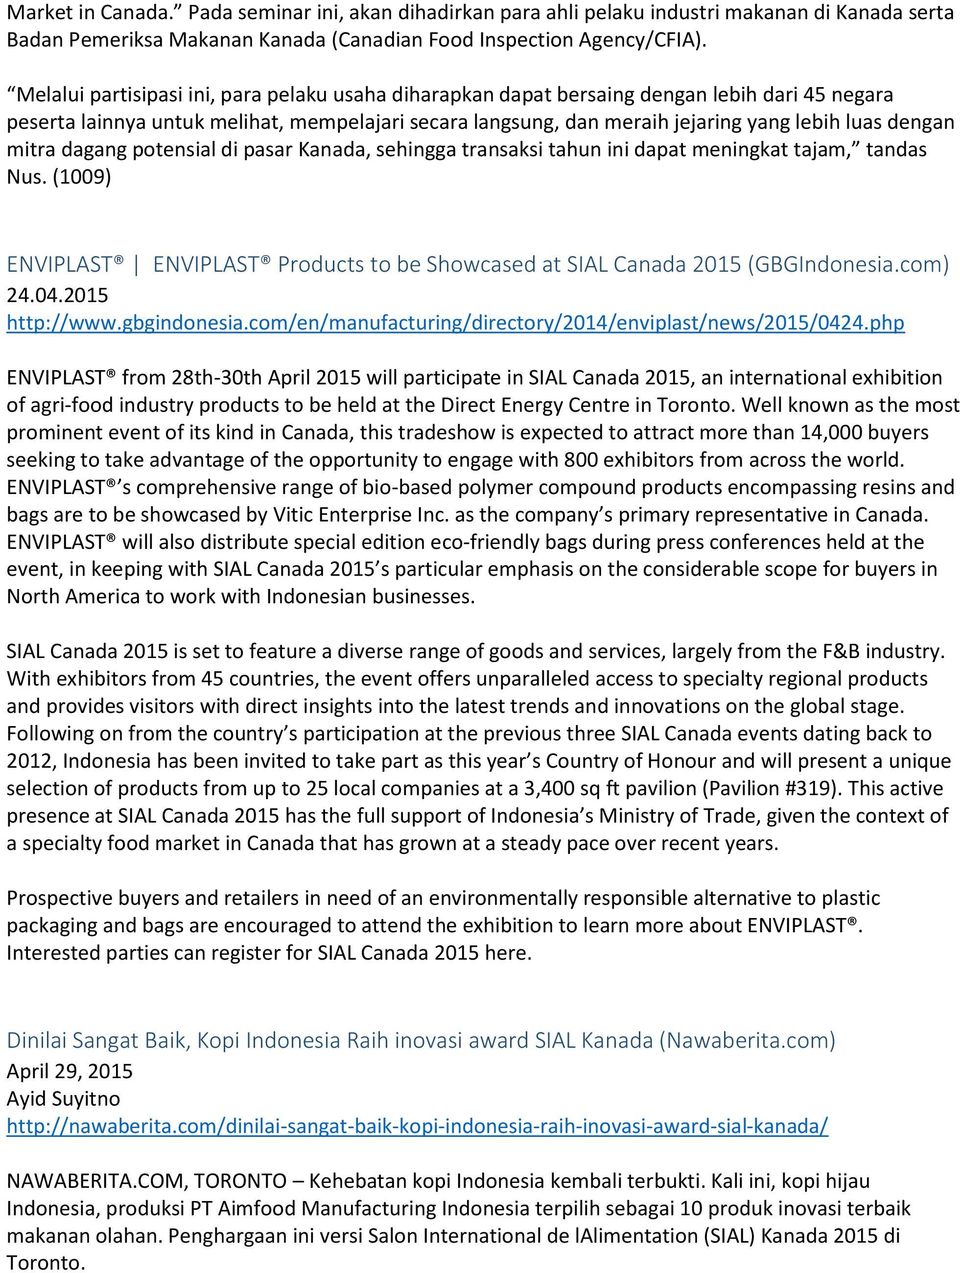 mitra dagang potensial di pasar Kanada, sehingga transaksi tahun ini dapat meningkat tajam, tandas Nus. (1009) ENVIPLAST ENVIPLAST Products to be Showcased at SIAL Canada 2015 (GBGIndonesia.com) 24.